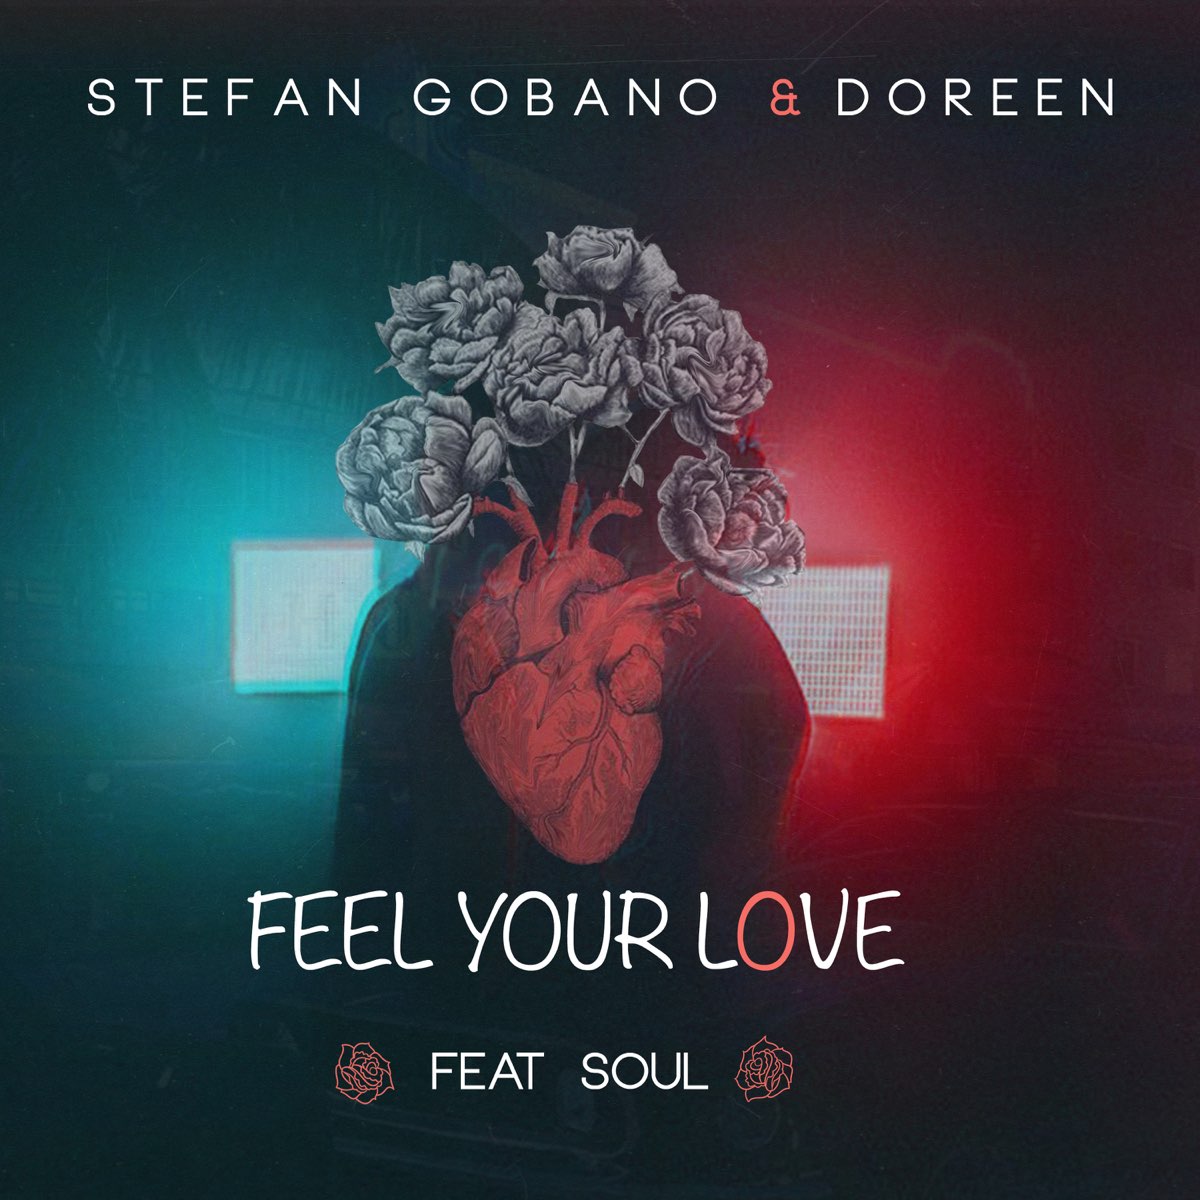 Feel the soul. Stefan Gobano. Stefan Gobano & Doreen - Love again. Soul feel. Feel the Soul фото.